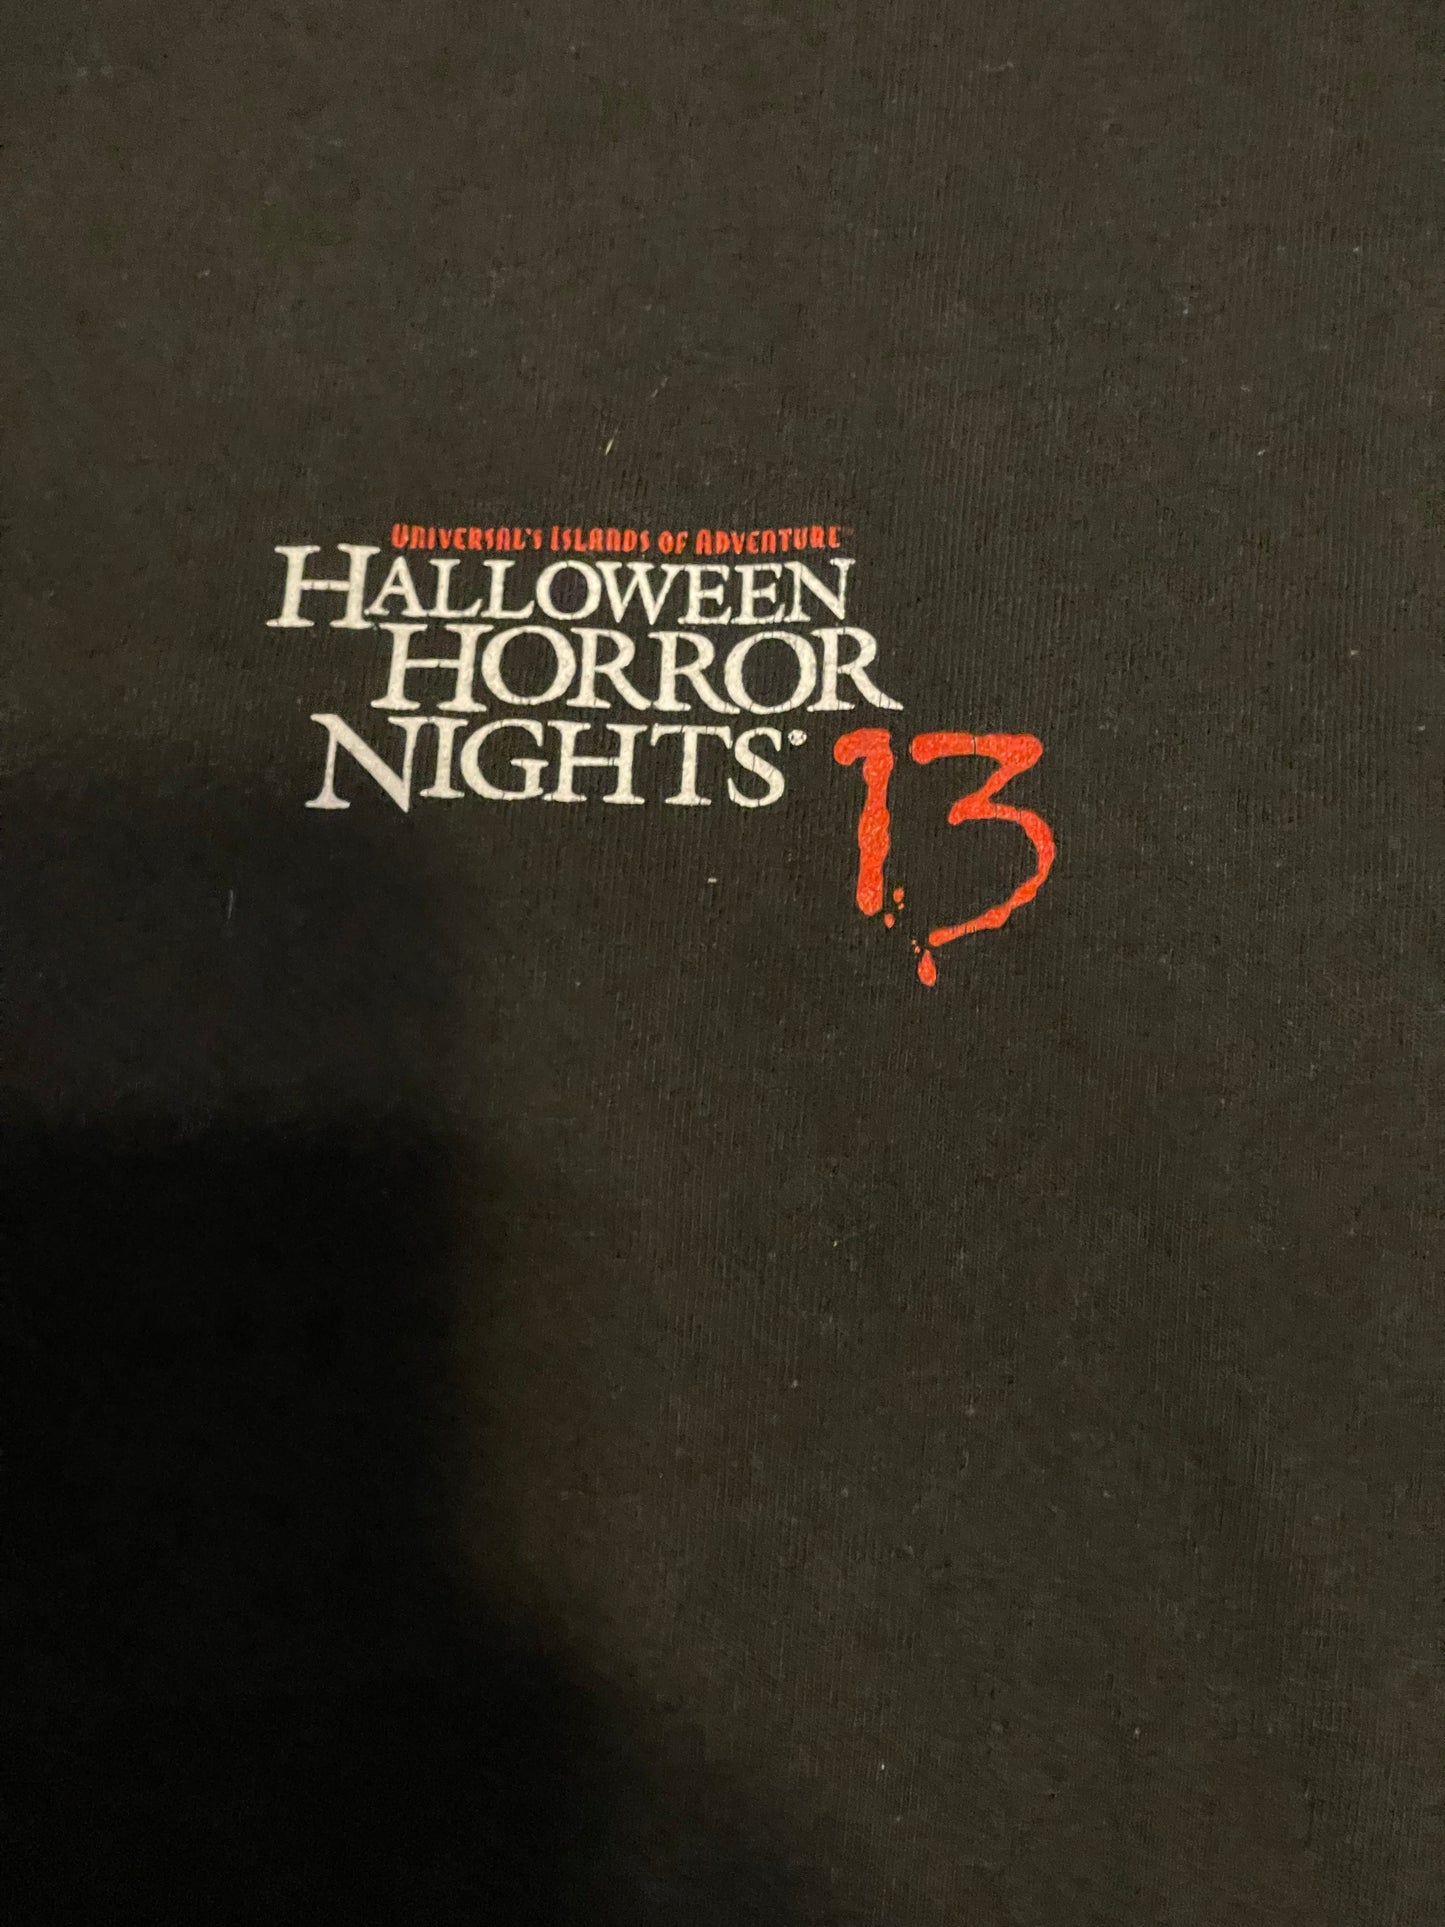 2003 Halloween Horror Nights Tee